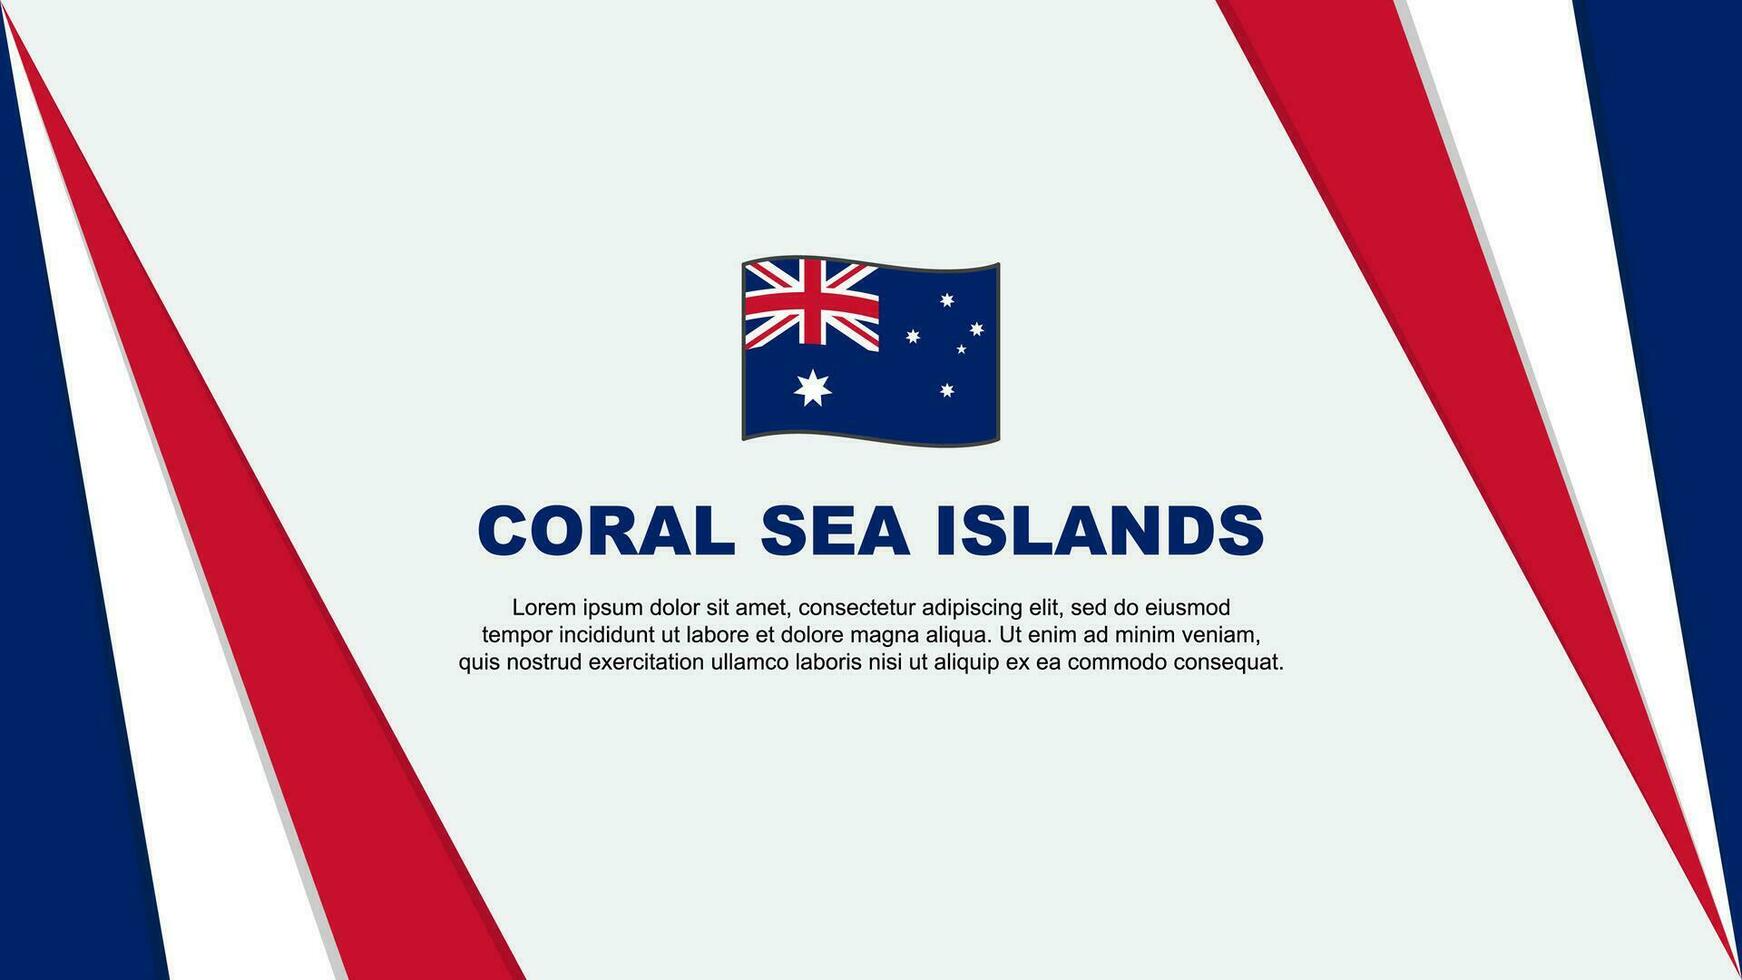 korall hav öar flagga abstrakt bakgrund design mall. korall hav öar oberoende dag baner tecknad serie vektor illustration. korall hav öar flagga